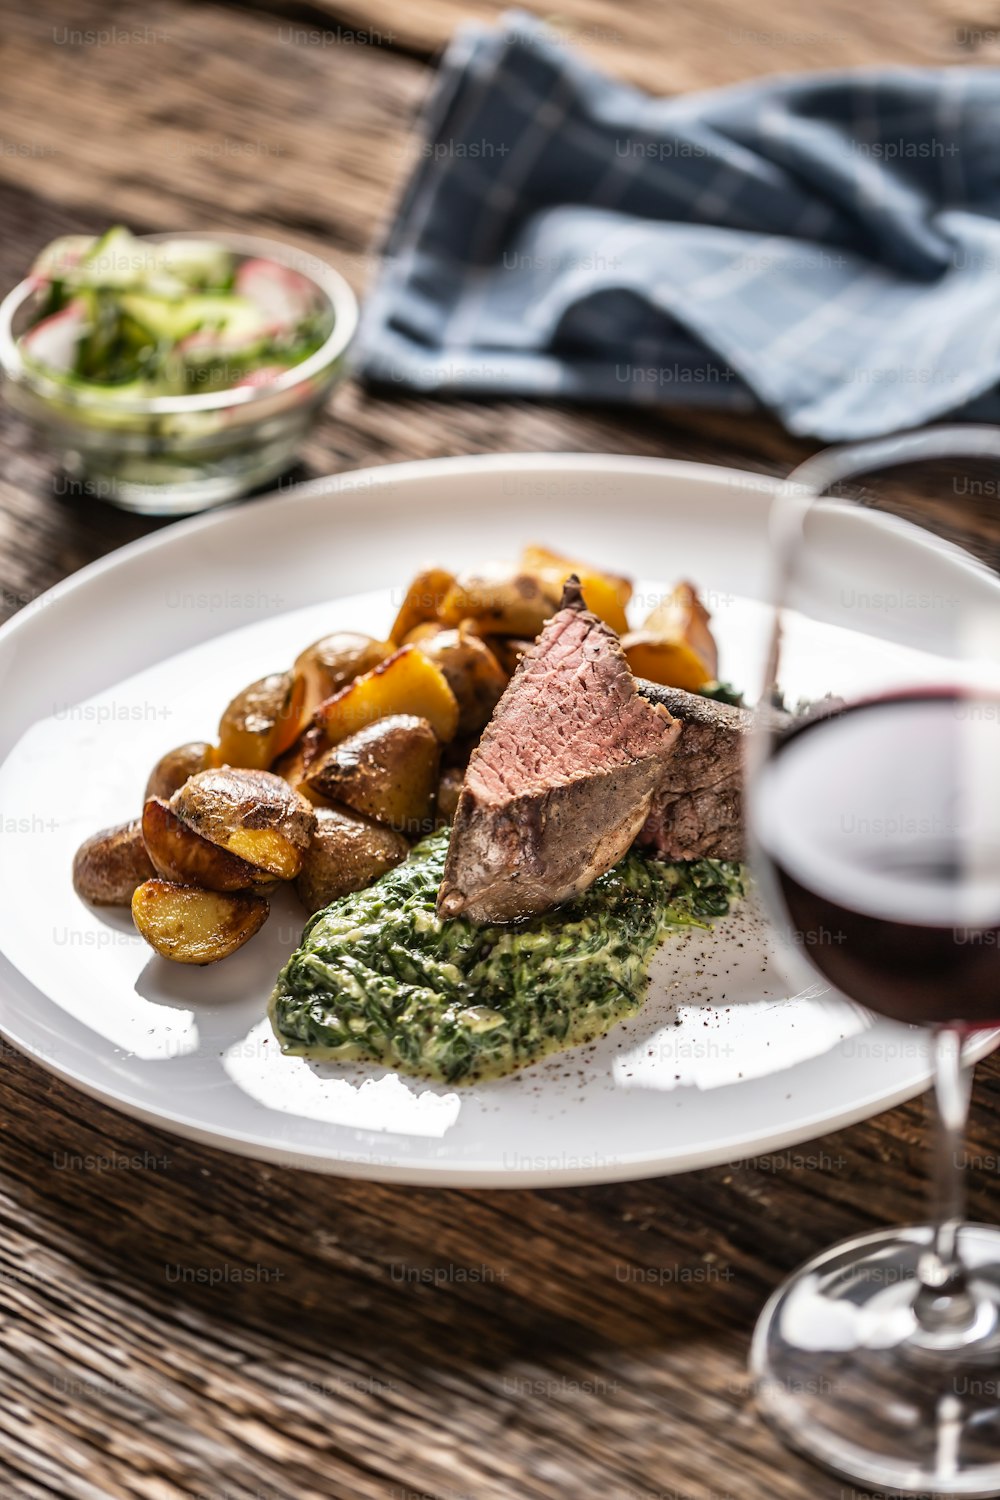 Vin rouge comme baverage typique d'un steak de viande rouge sous vide avec pommes de terre rôties, trempette aux épinards et salade fraîche servi sur une assiette en porcelaine blanche sur le bureau en bois.